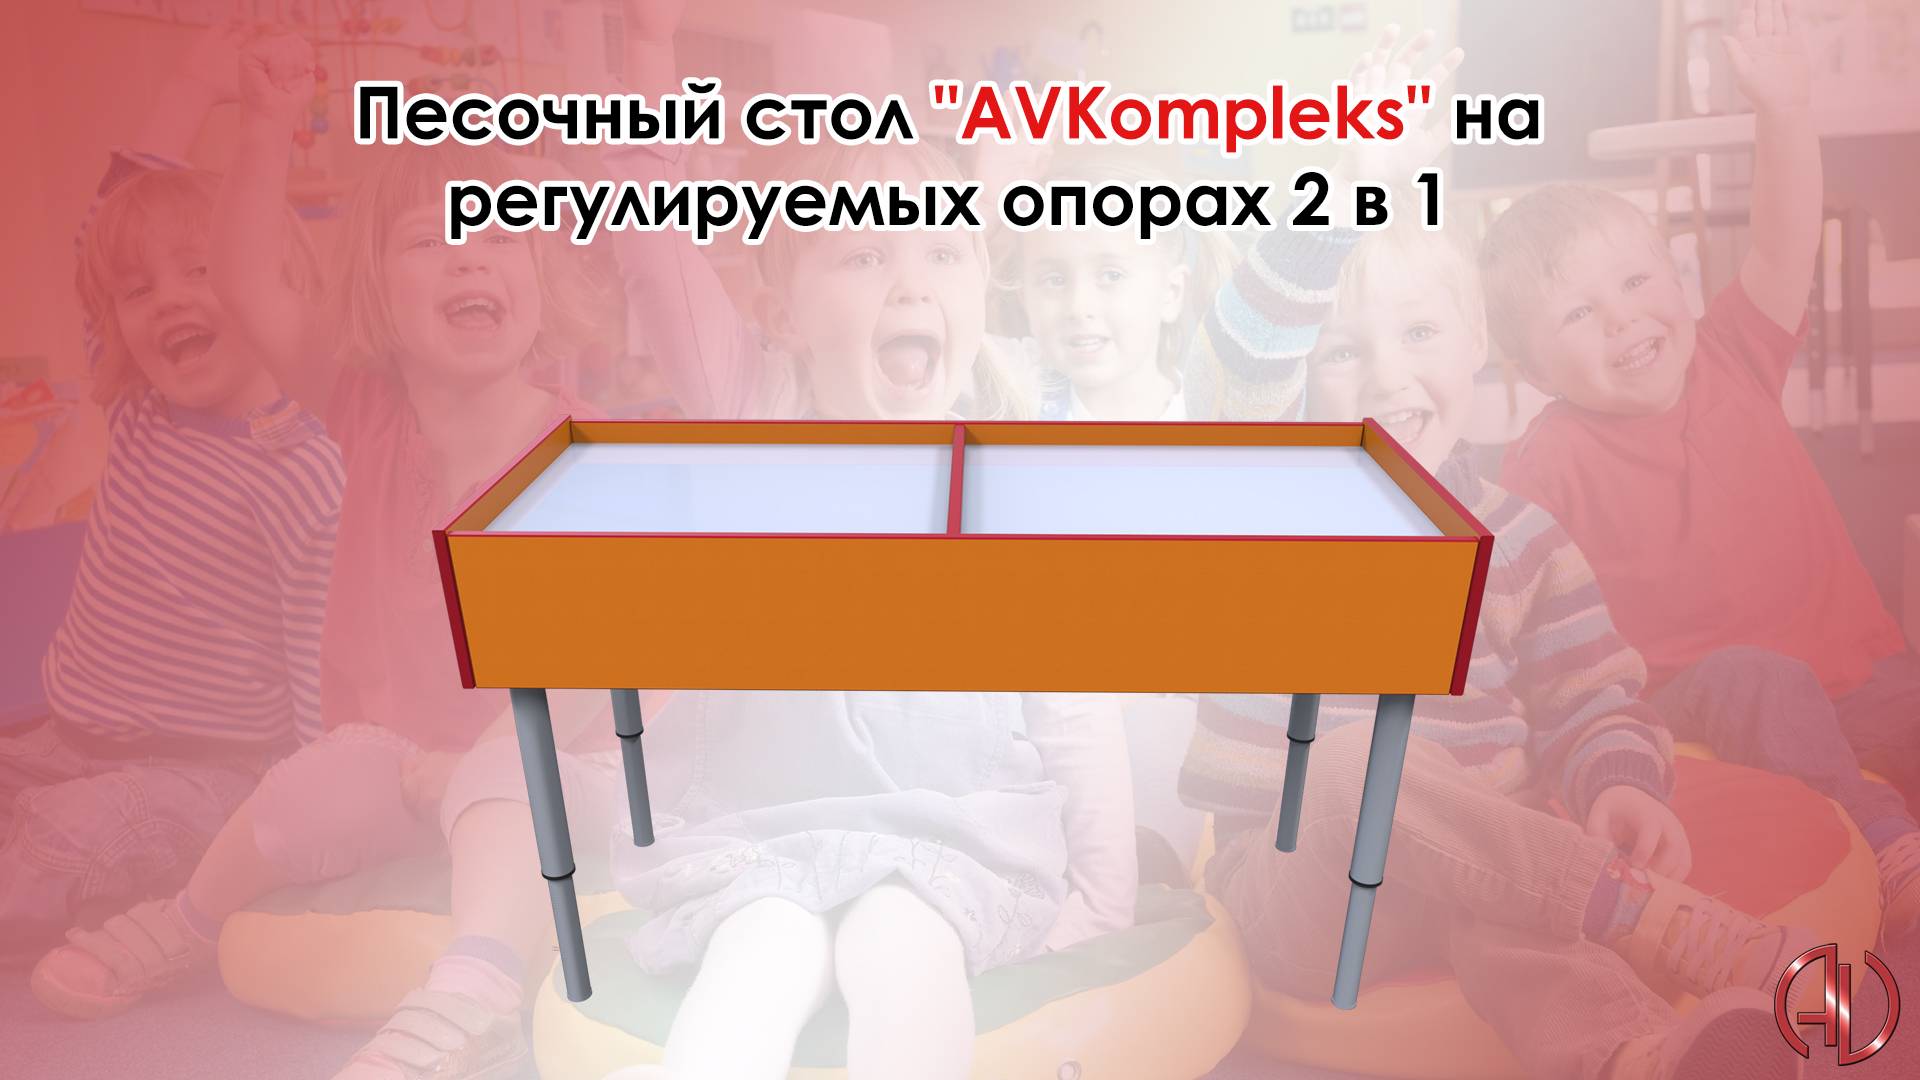 Песочный стол "AVKompleks" на регулируемых опорах 2 в 1